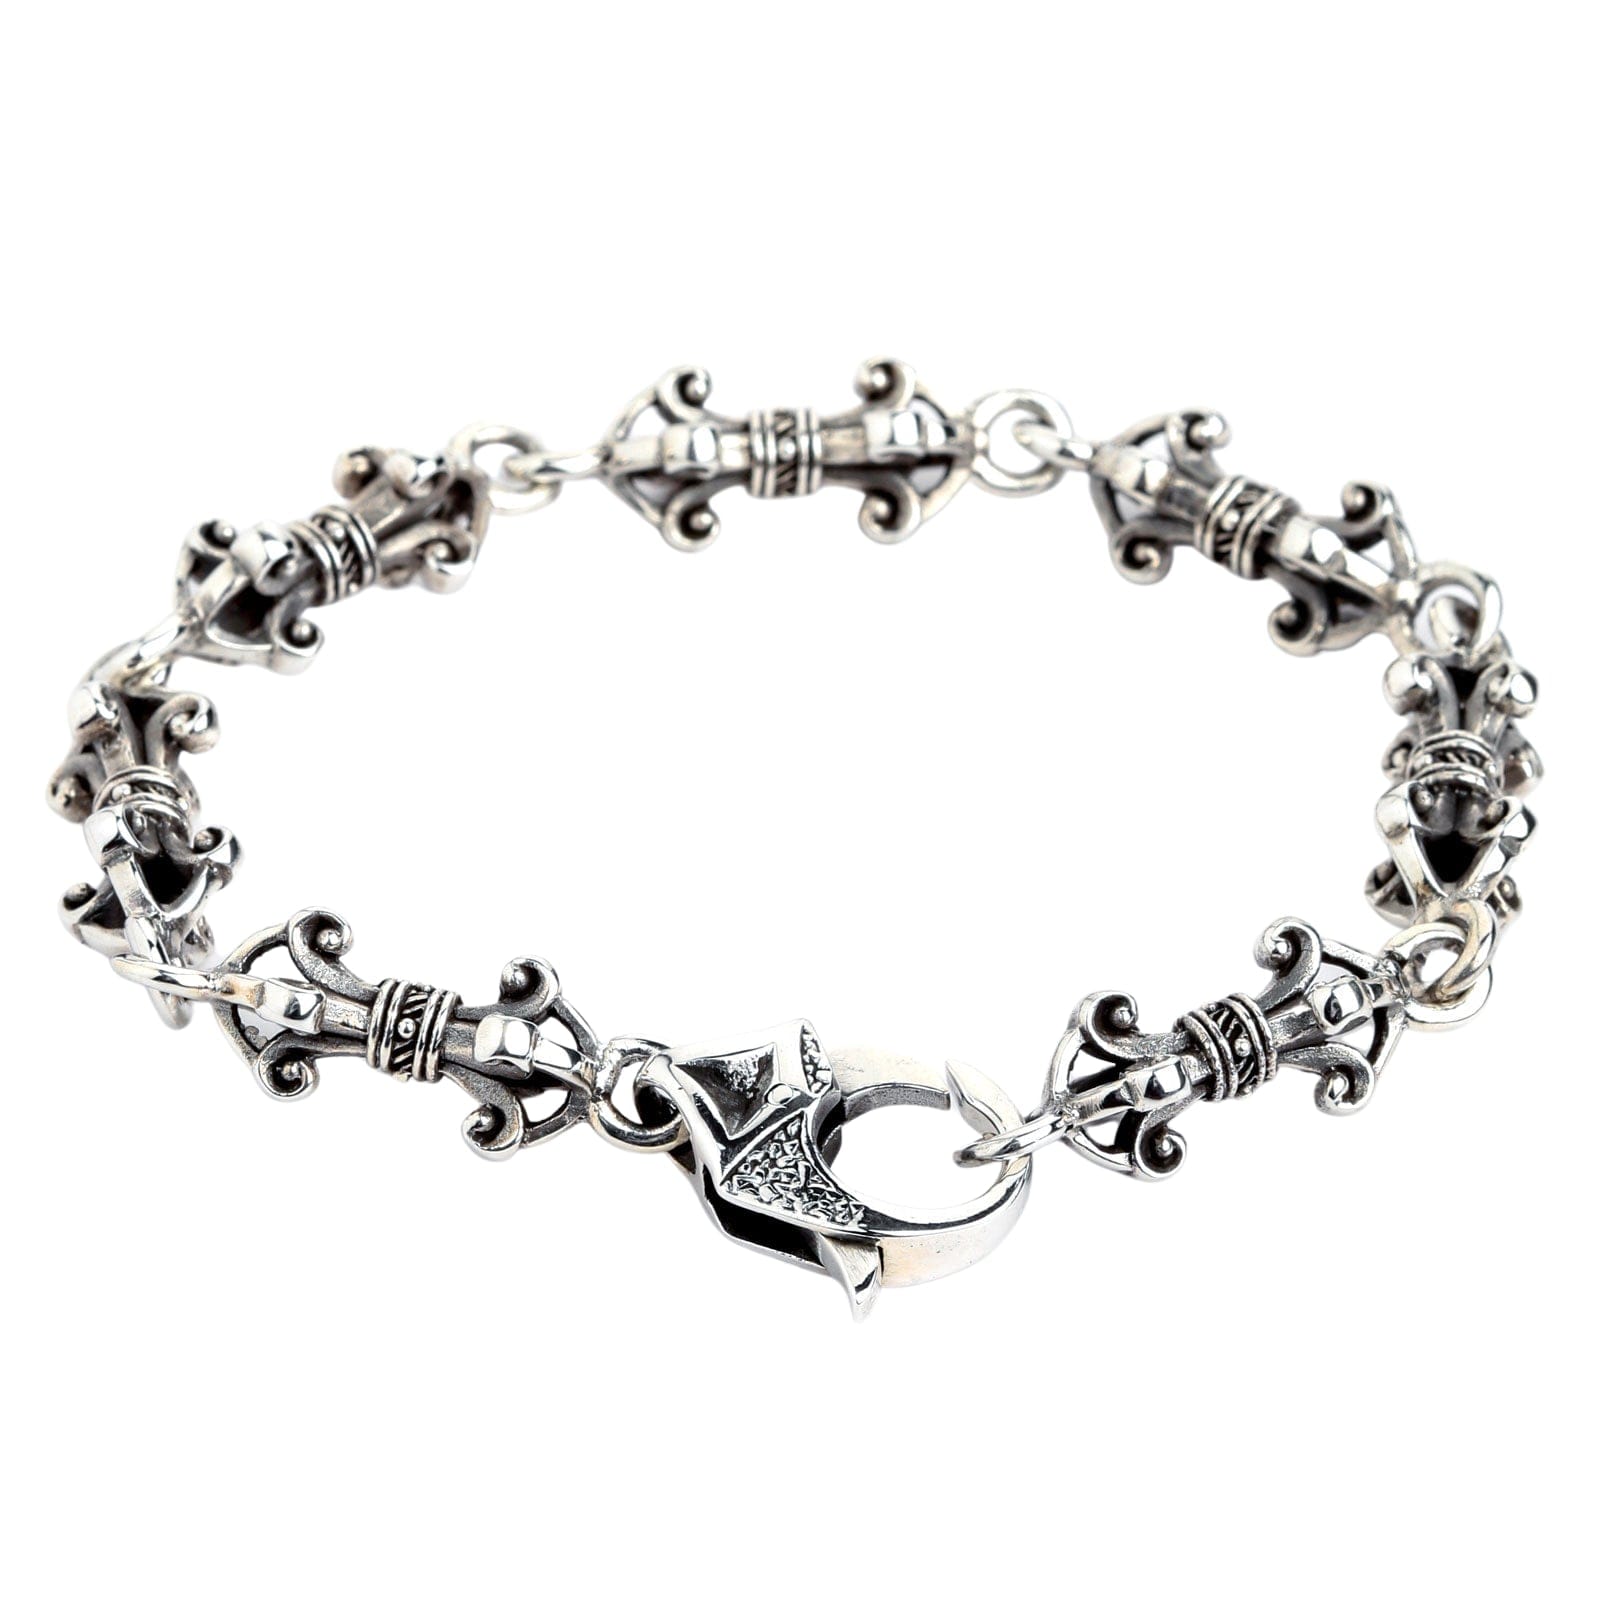 Tibetan Sky Stone Bracelet Silver – eLiasz and eLLa Jewelry Inc.